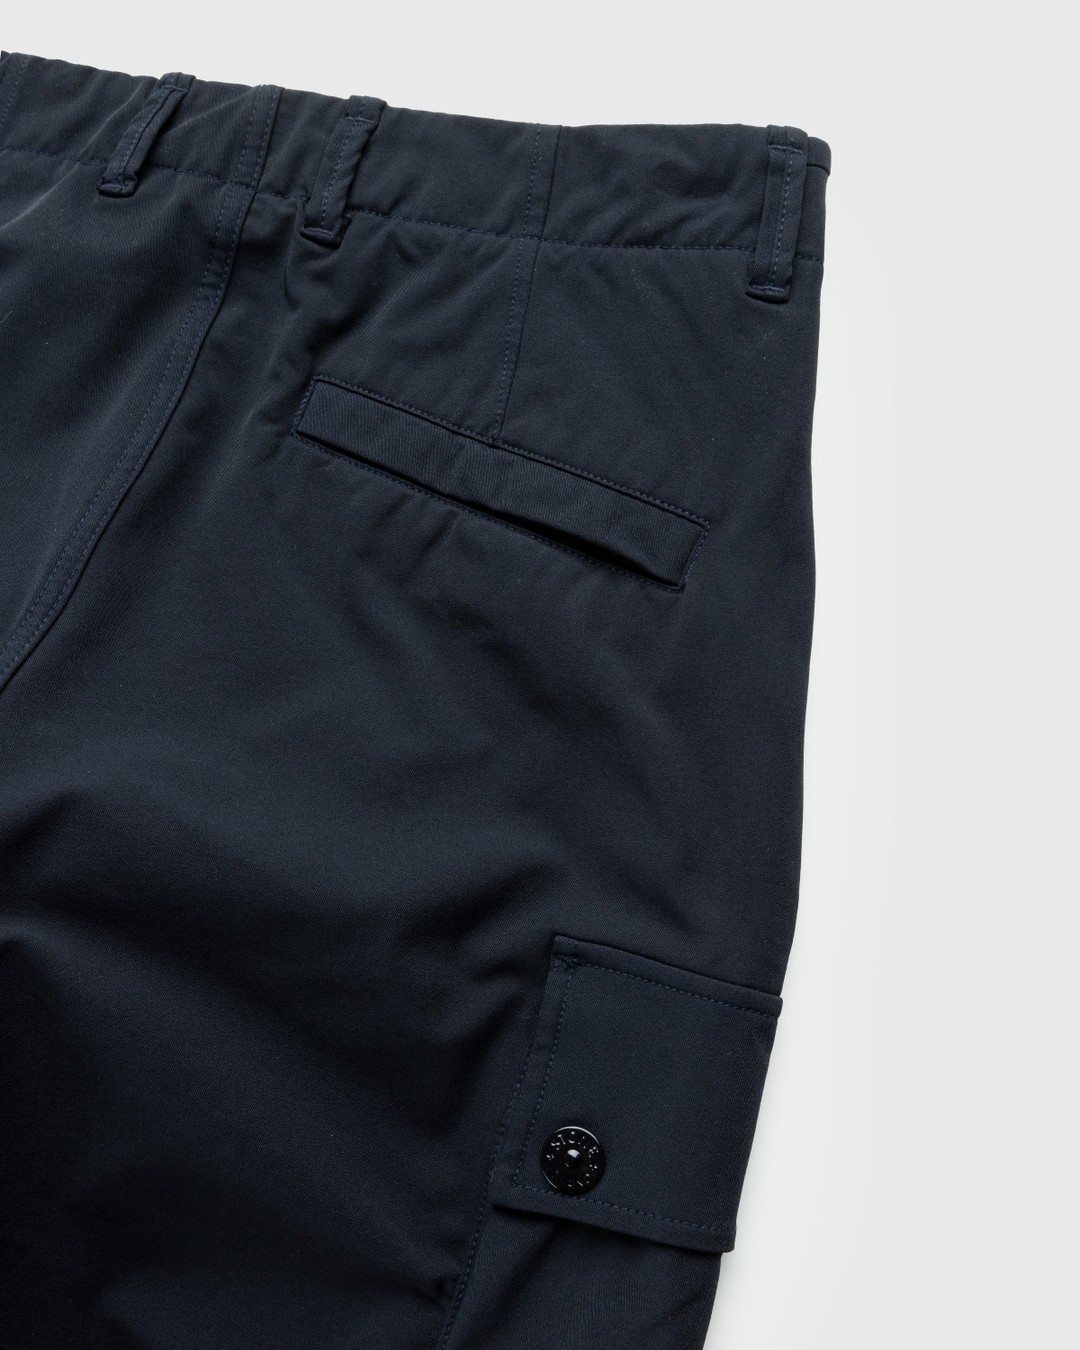 Stone Island – Nylon Cargo Pants Navy Blue - Cargo Pants - Blue - Image 4